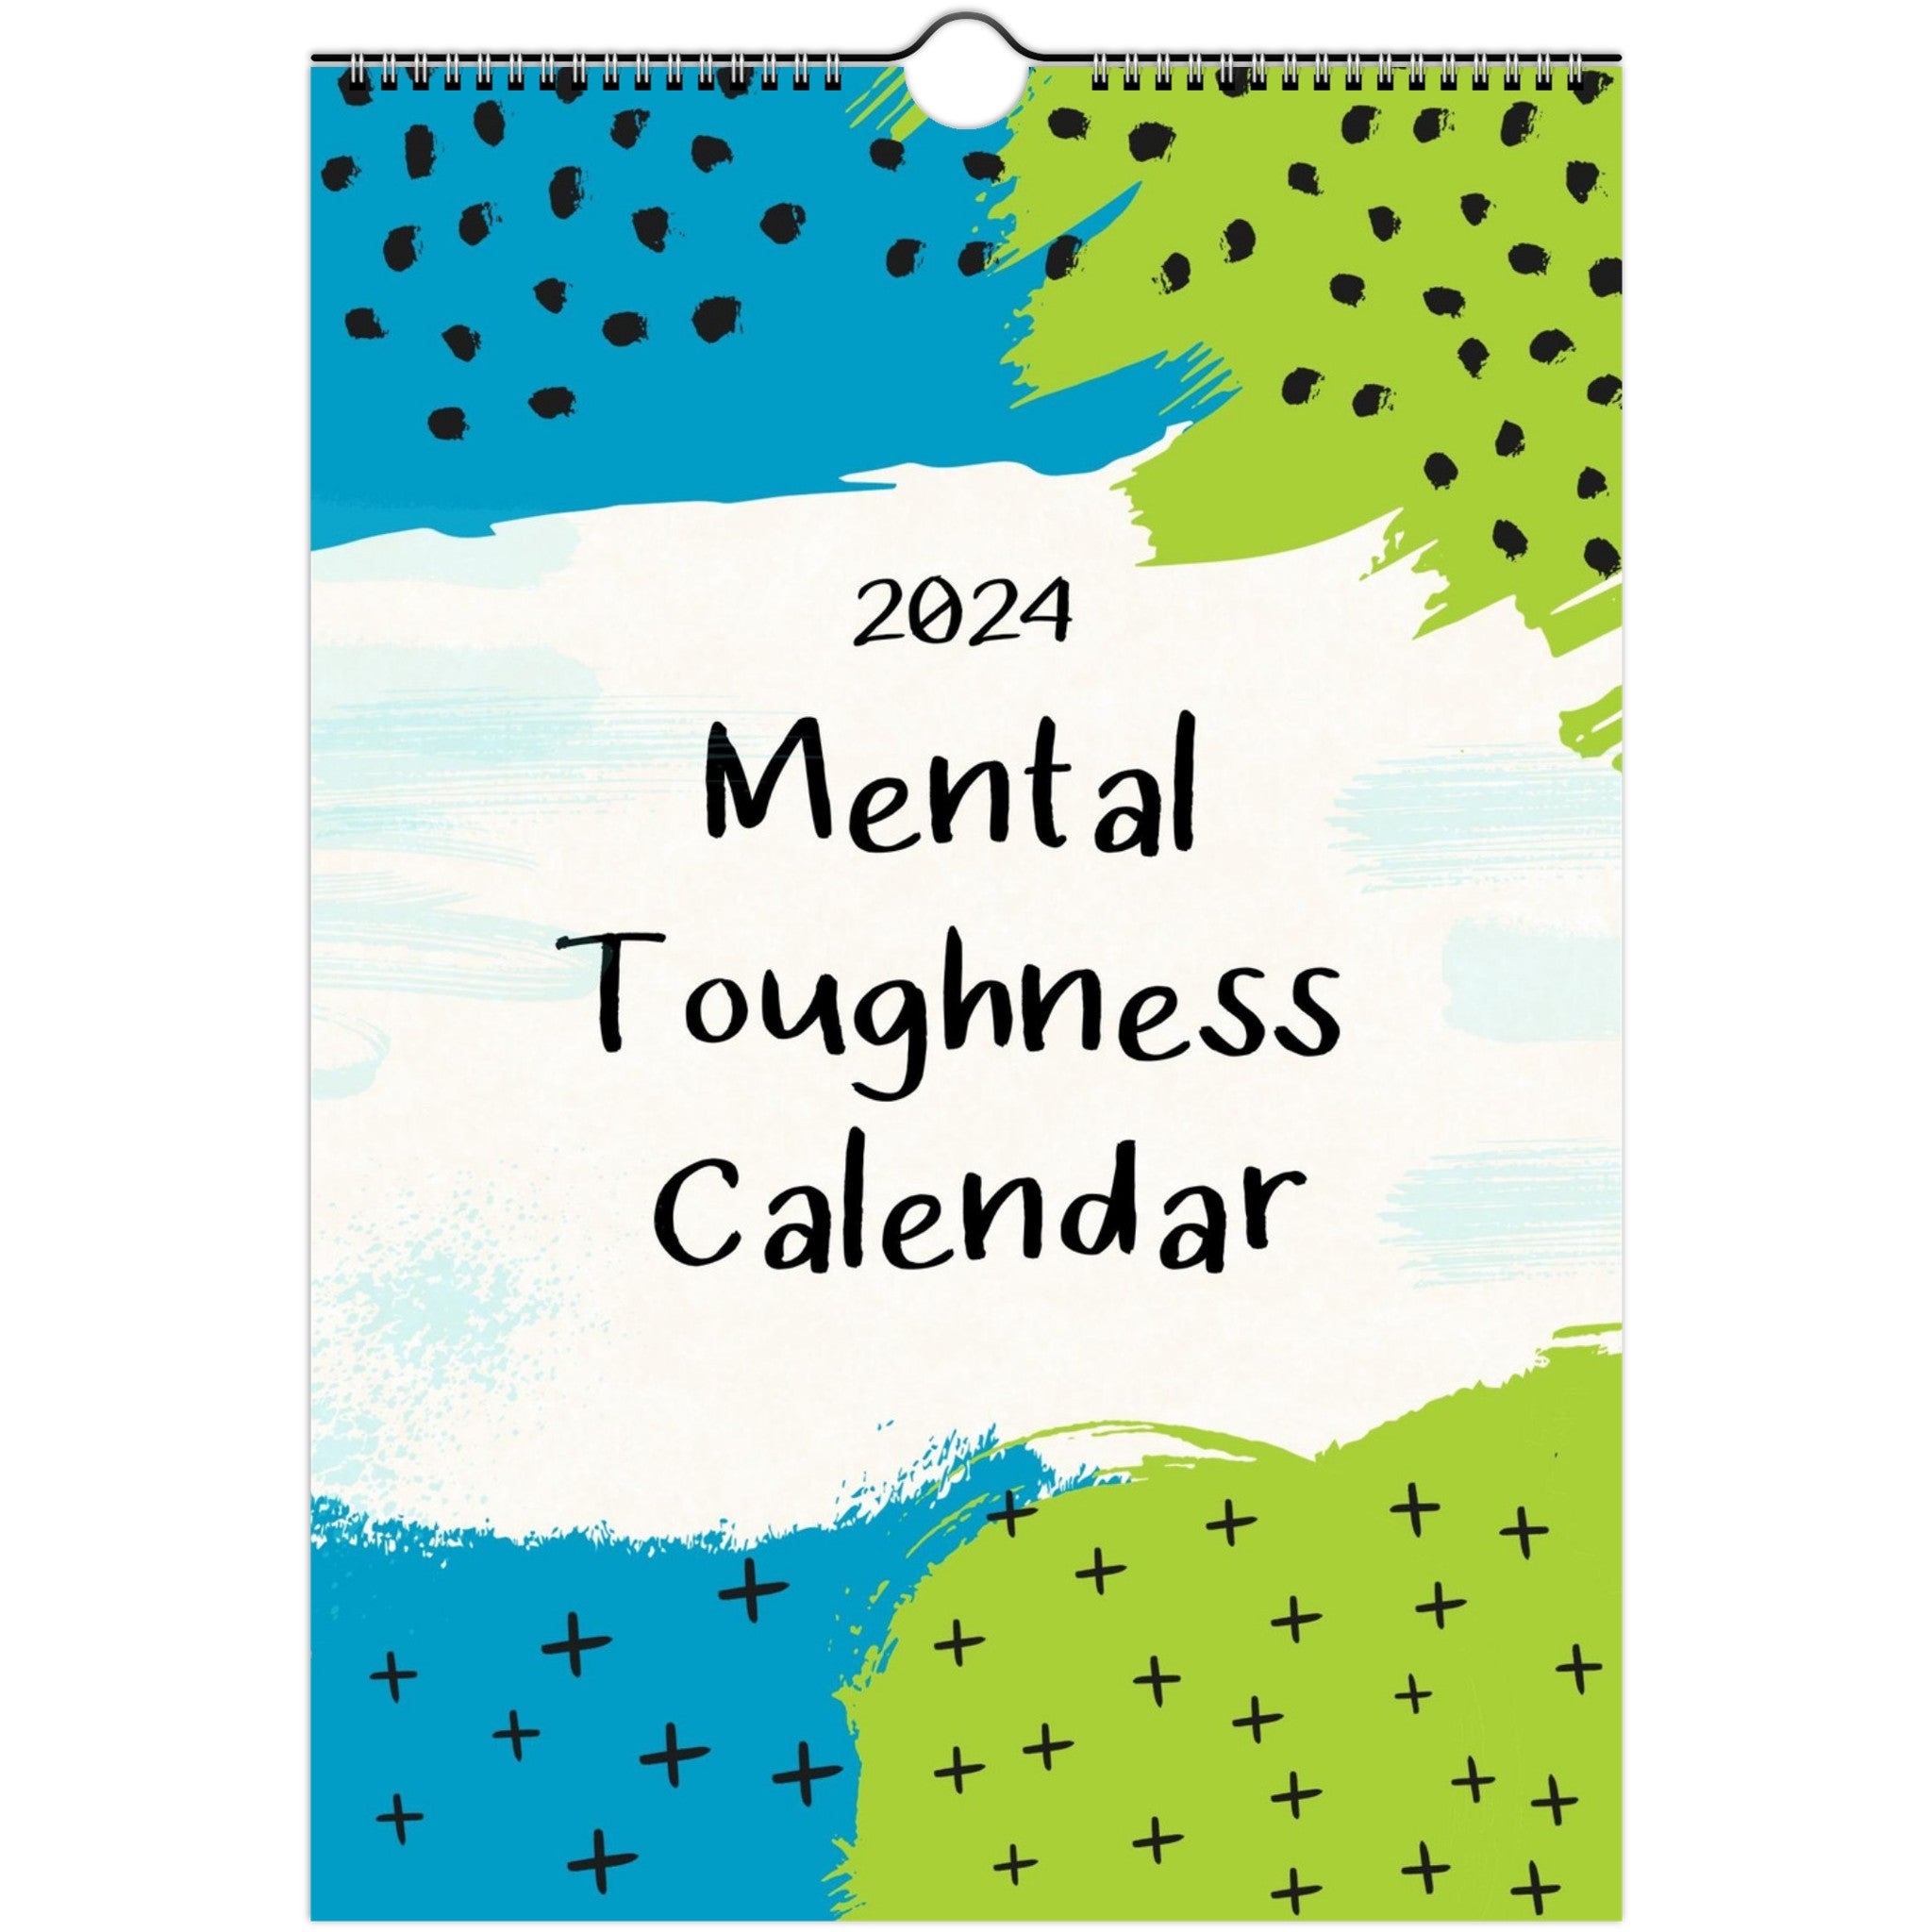 Mental Toughness Calendar for 2024